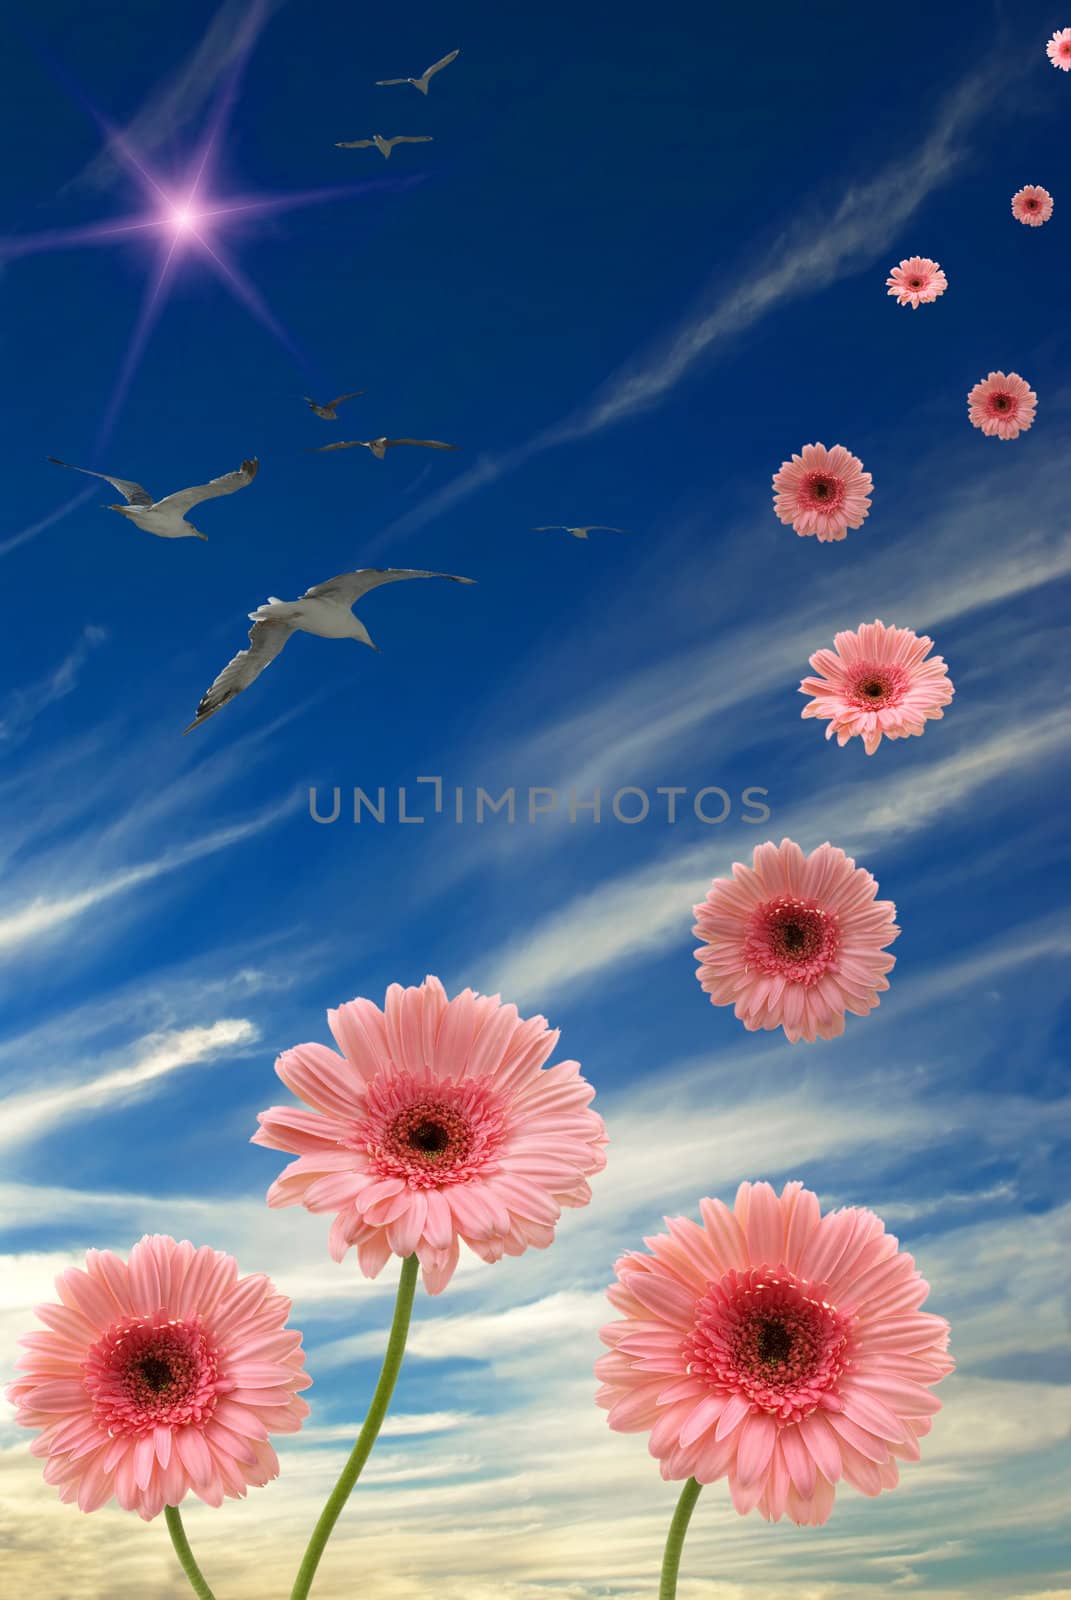 Daisies, sun, birds, and blue sky